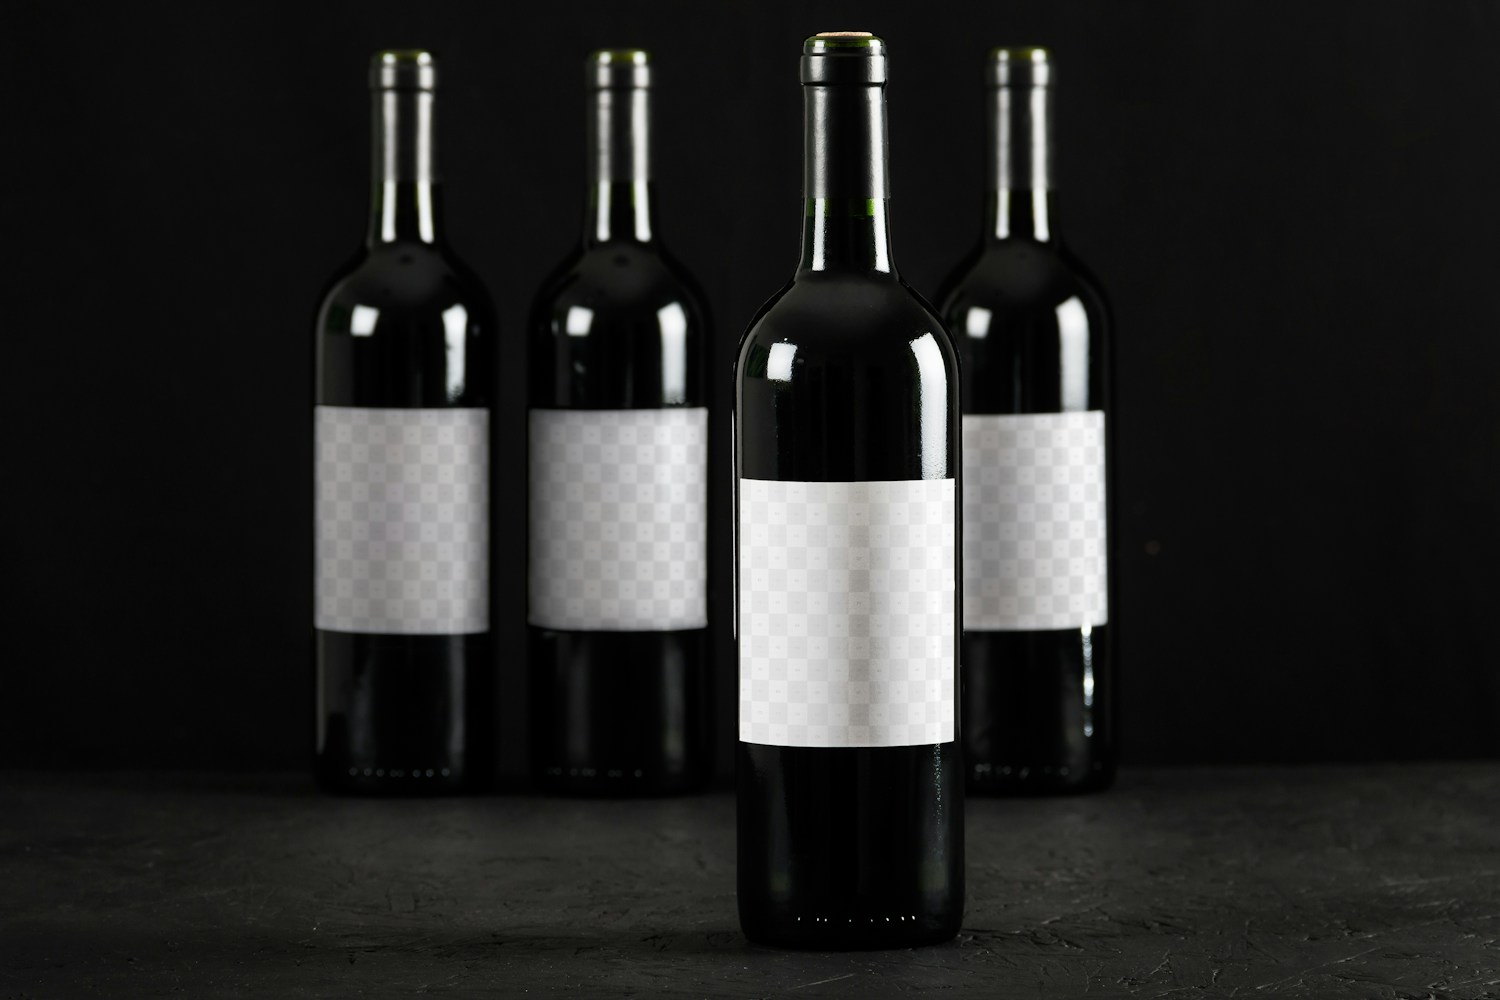 Área de Objetos Inteligentes sobre la maqueta de botellas de vino